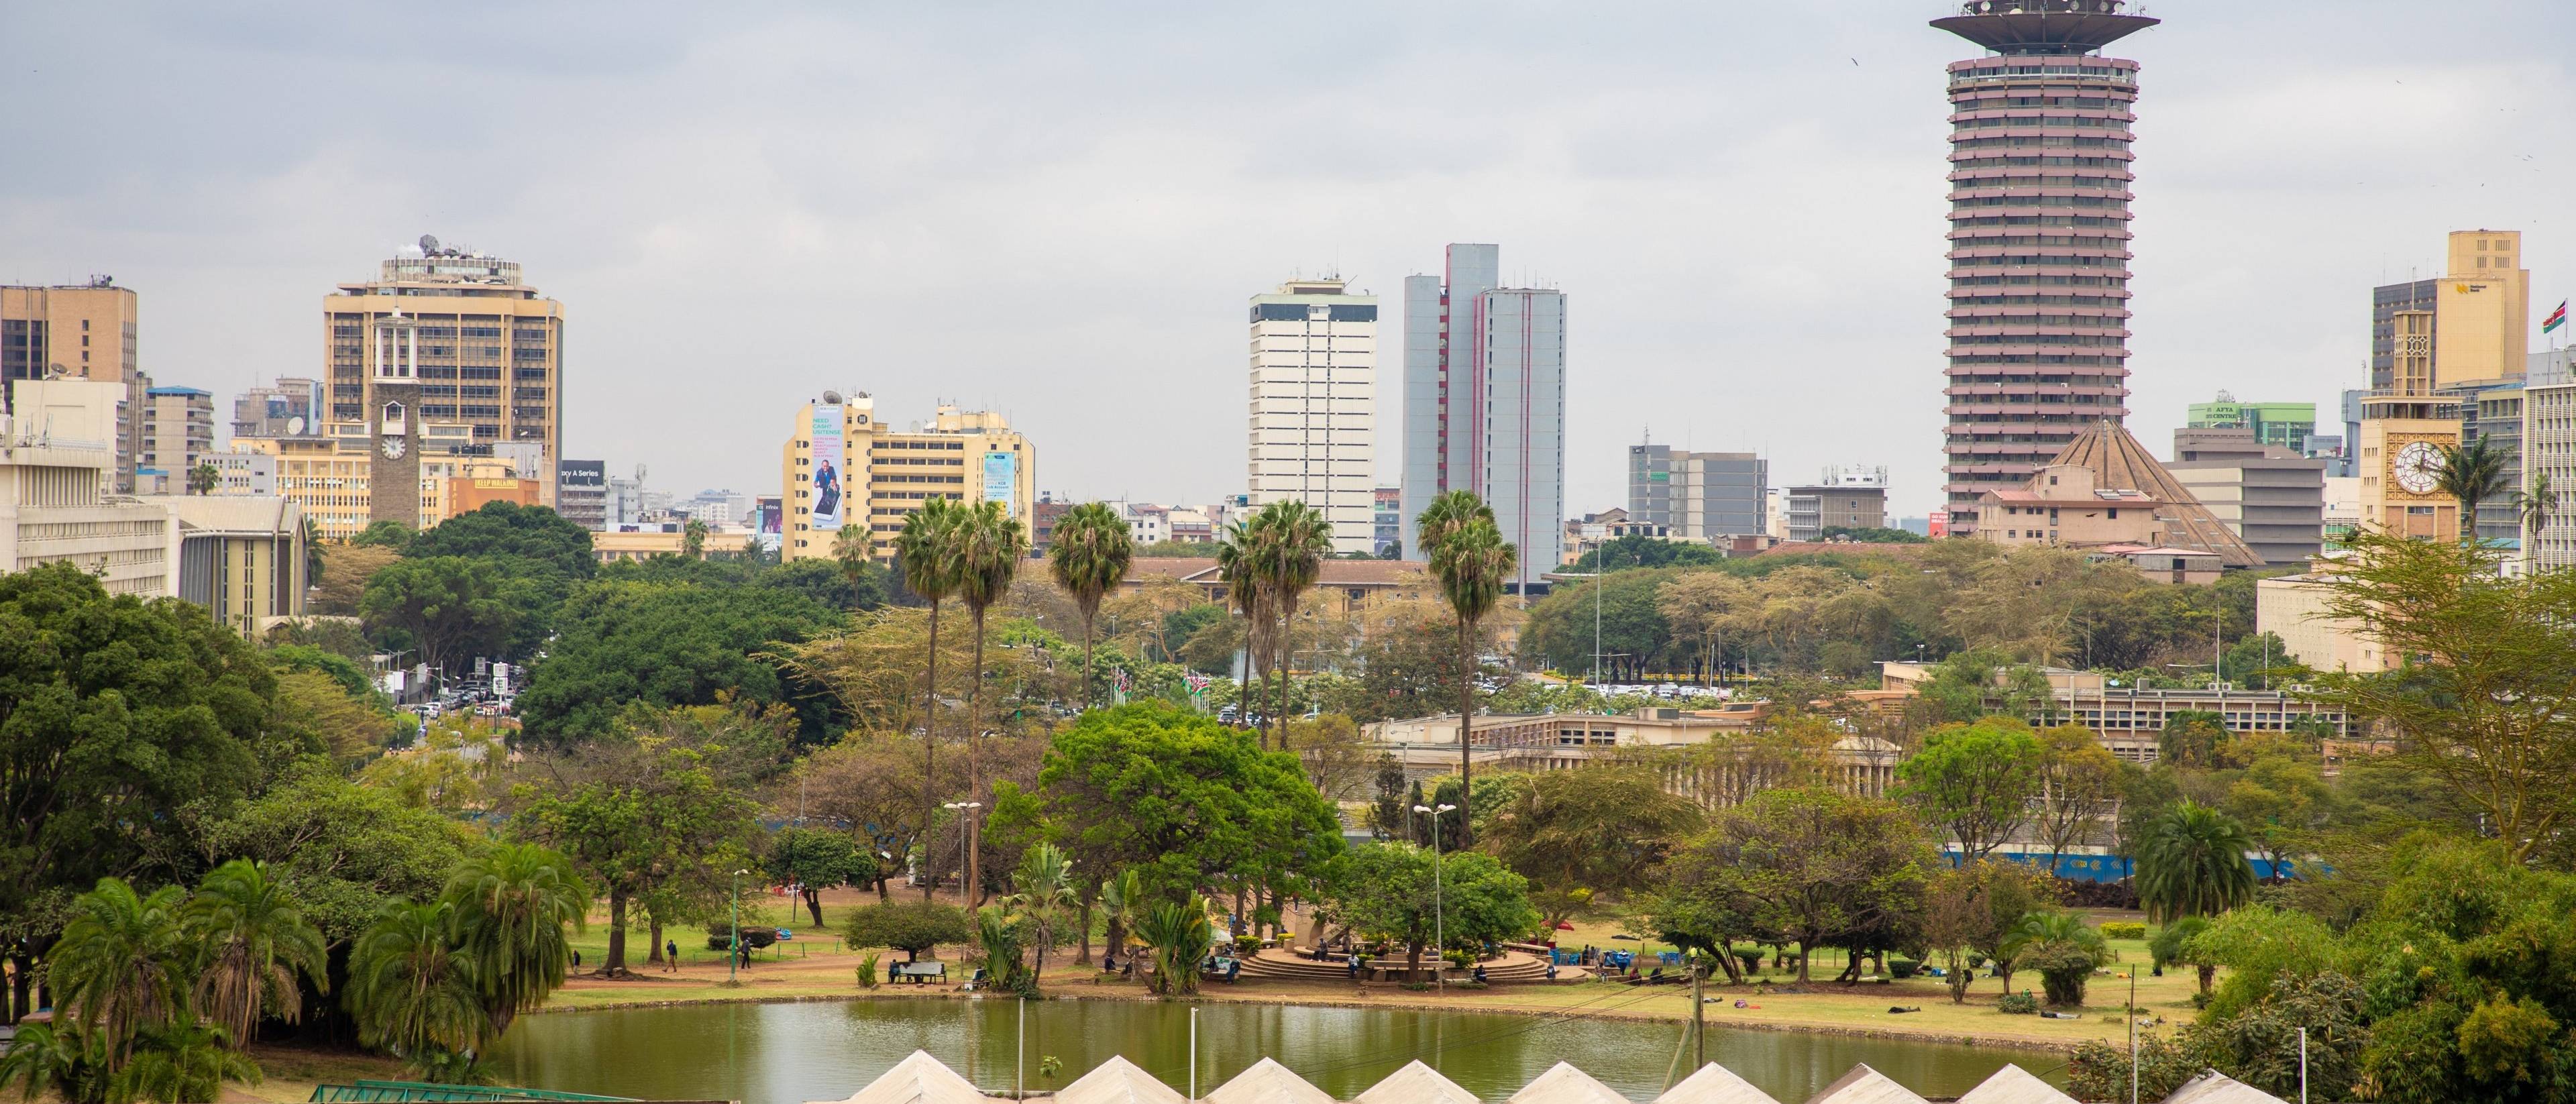 Bienvenido a Nairobi, la única capital de la vida salvaje